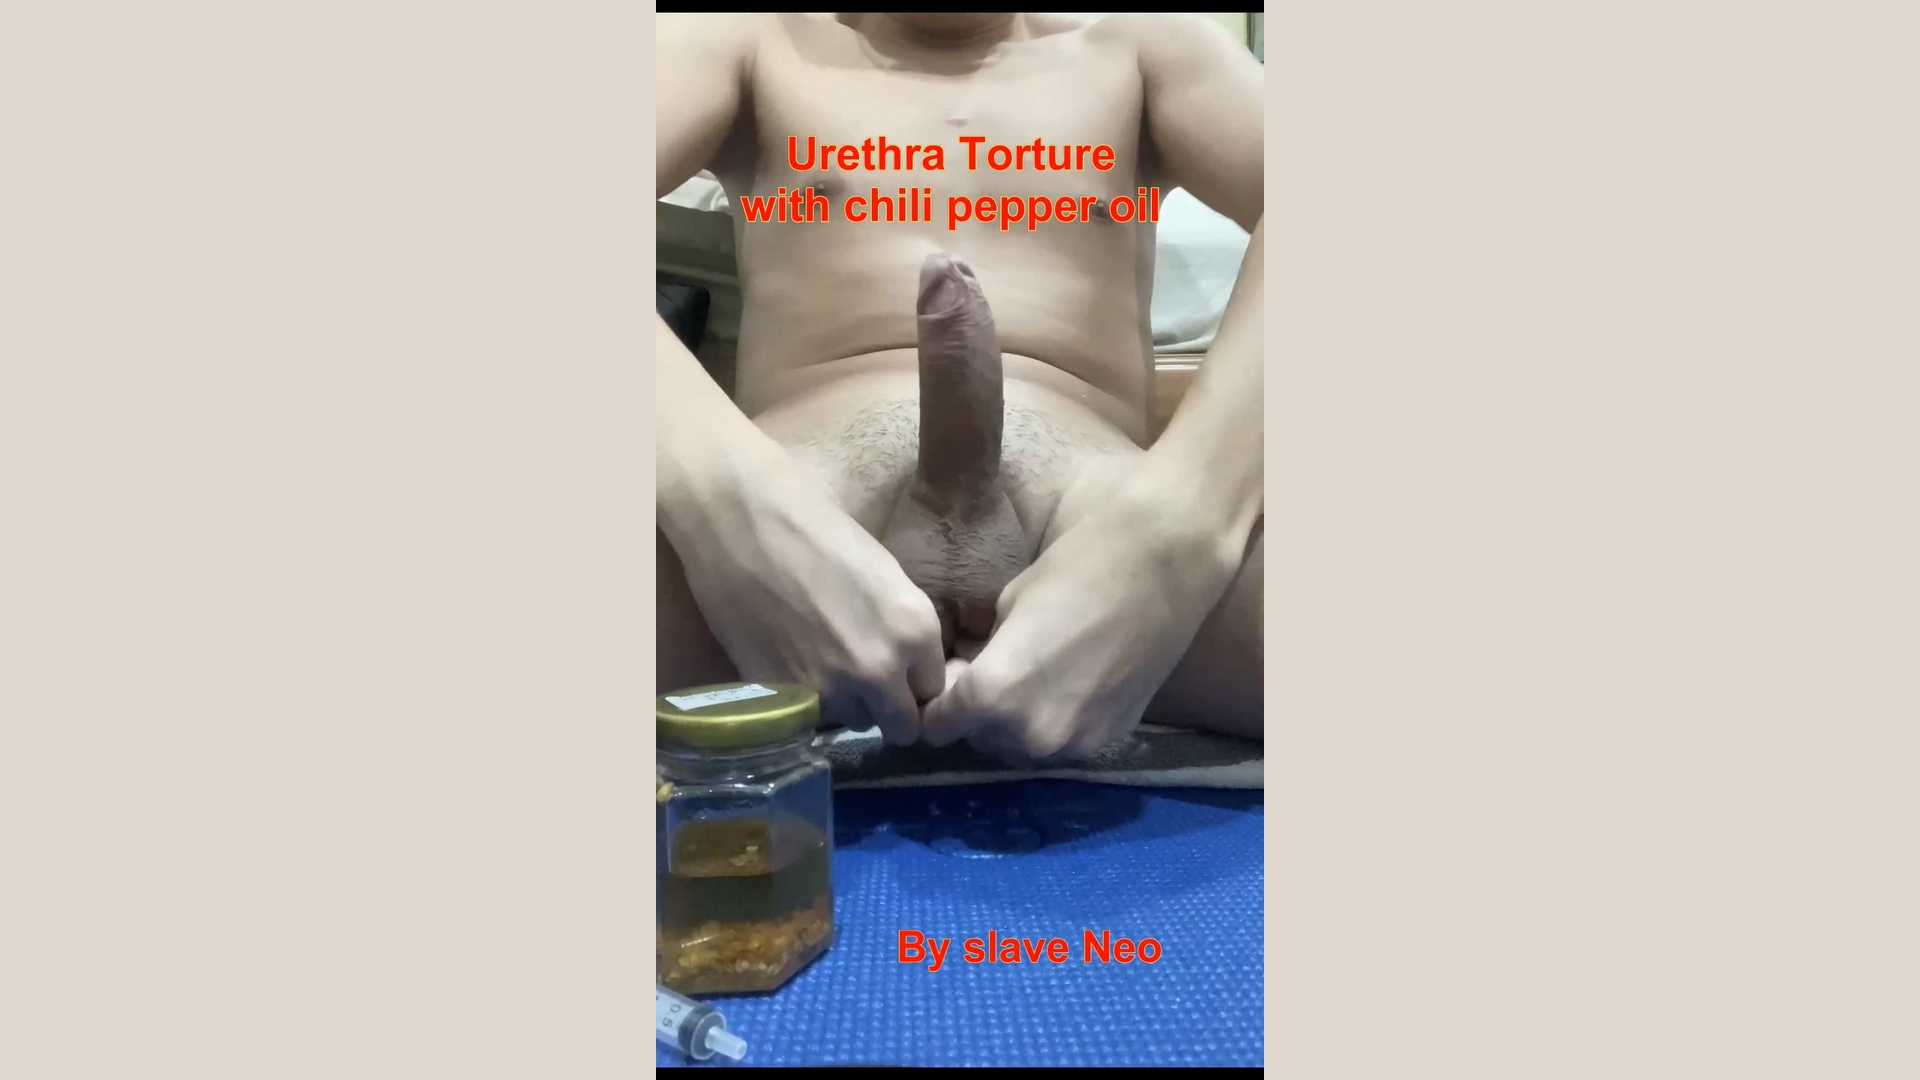 Chili Pepper Bdsm - Chili pepper oil in slave Neo's urethra - ThisVid.com